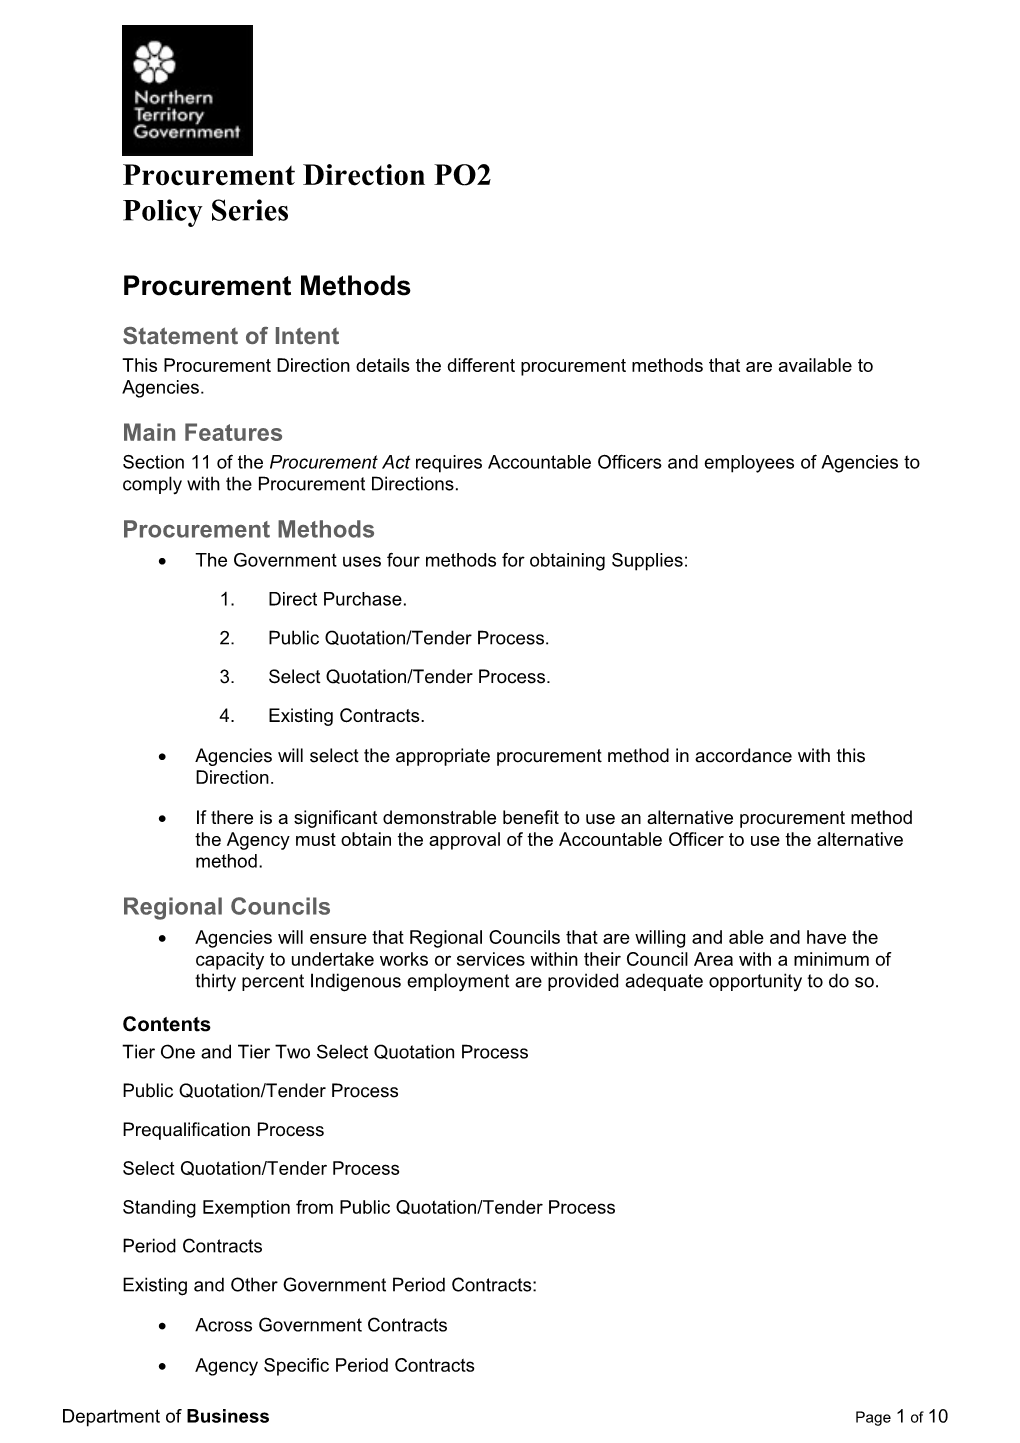 Procurement Direction PO2 (Procurement Methods)